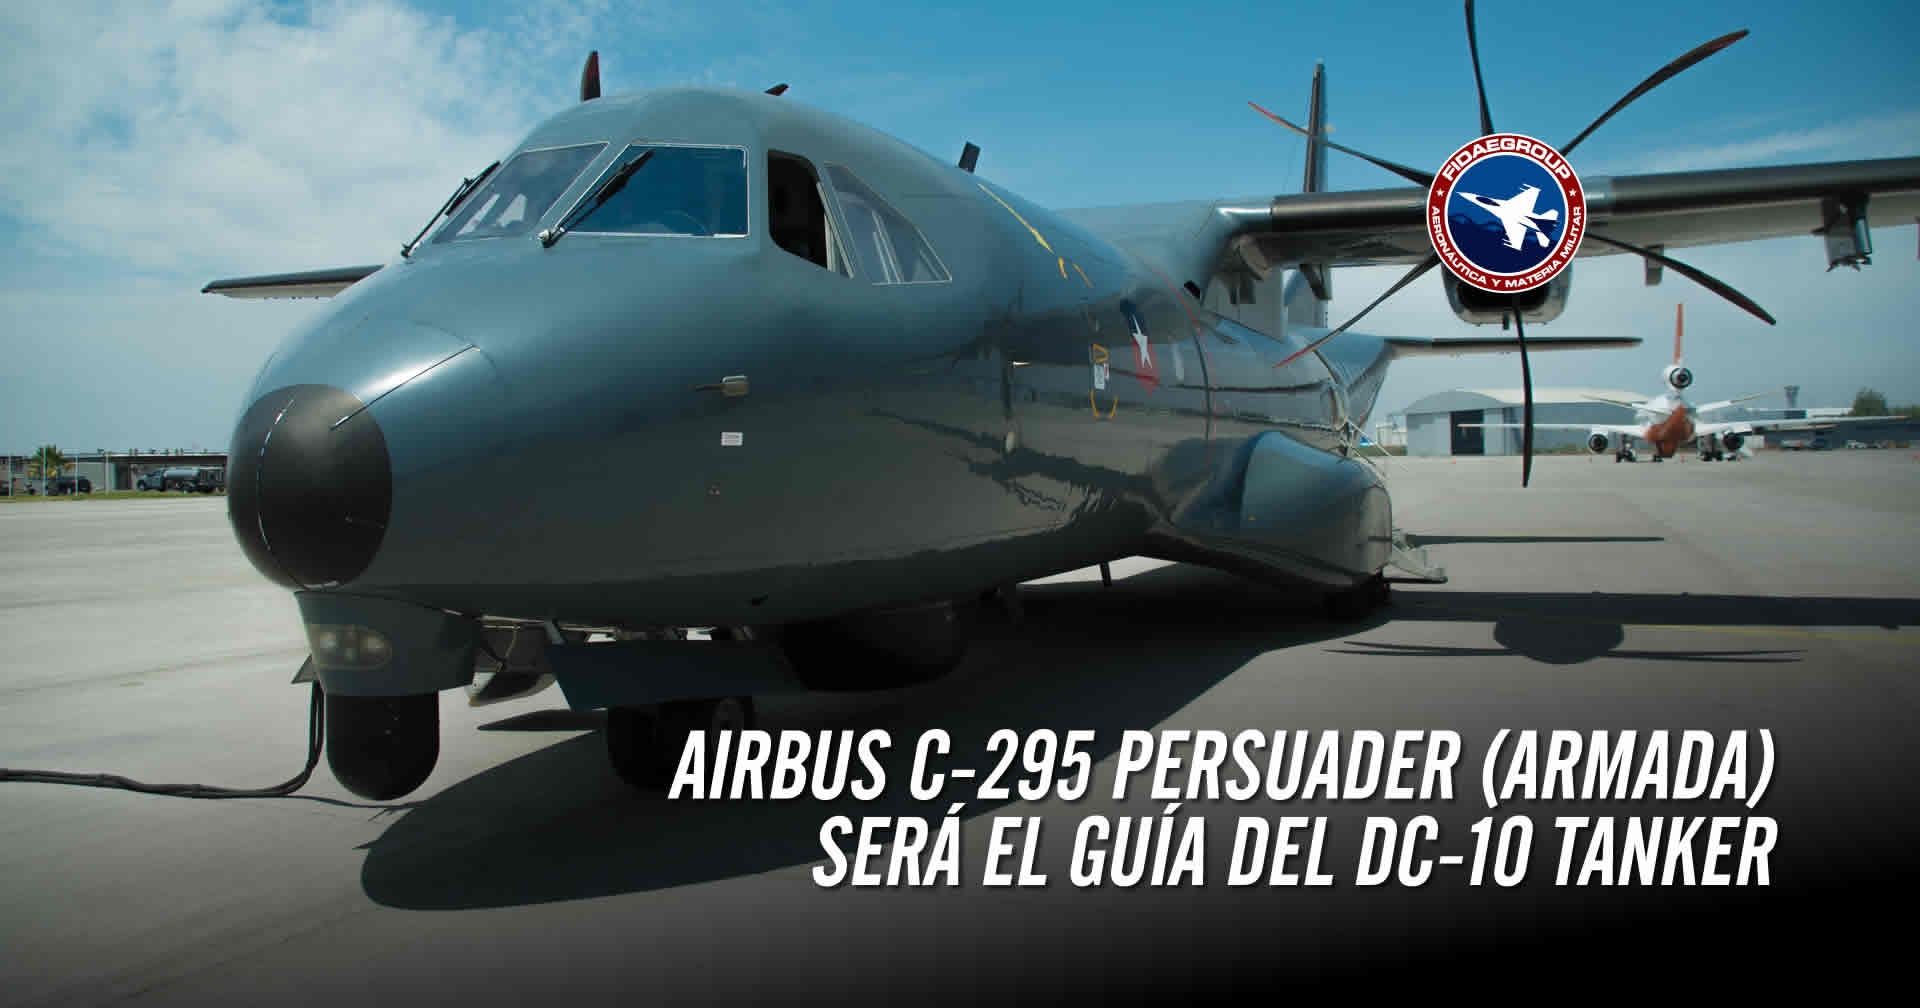 Aeronave P-295 será el guía del 10 Air Tanker (TEN TANKER)